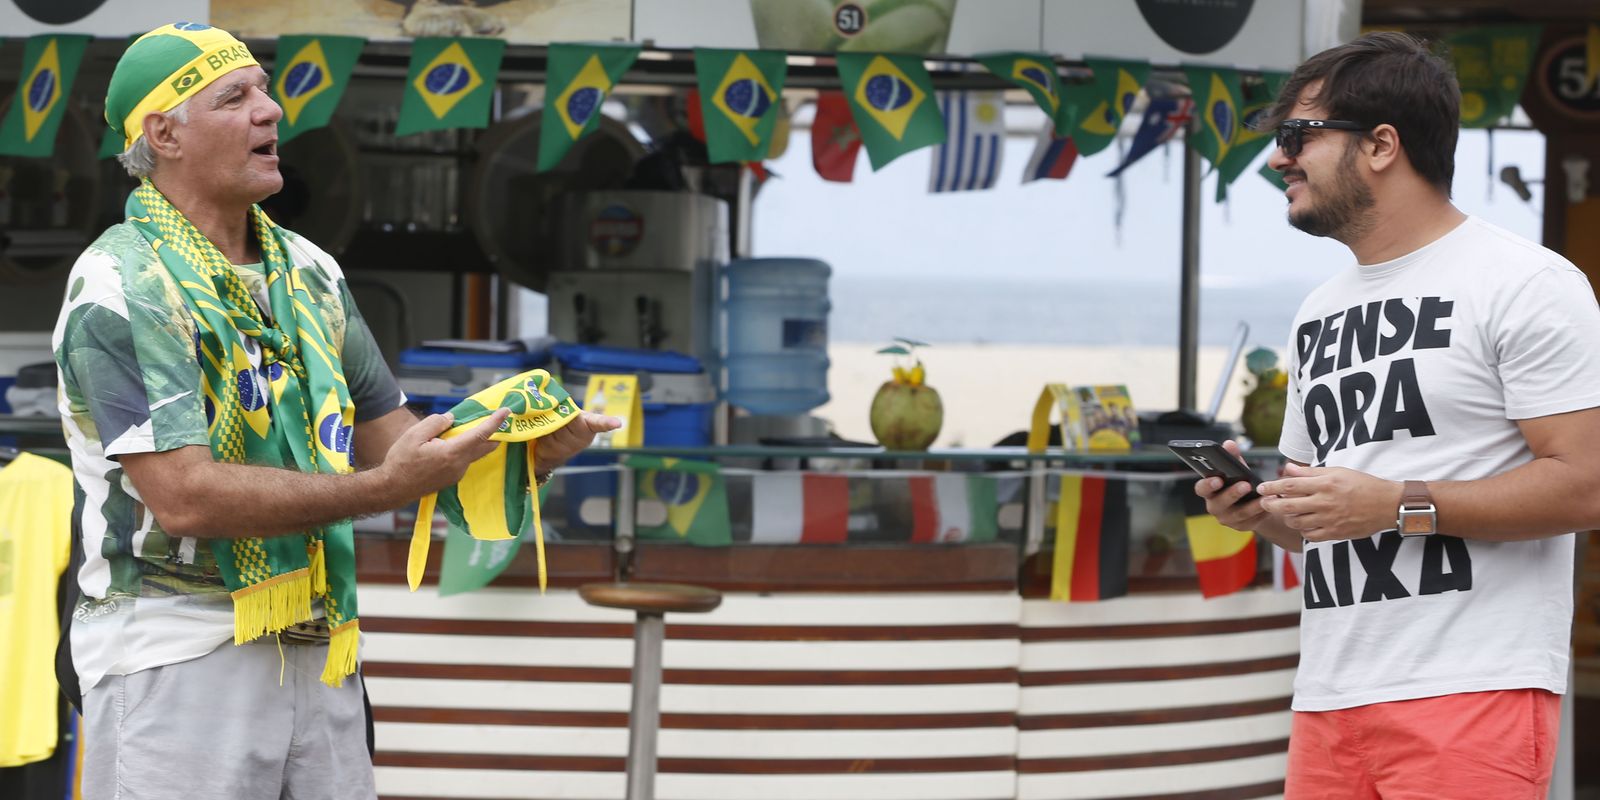 Dias de jogos do Brasil na Copa do Mundo não serão feriado, Distrito  Federal